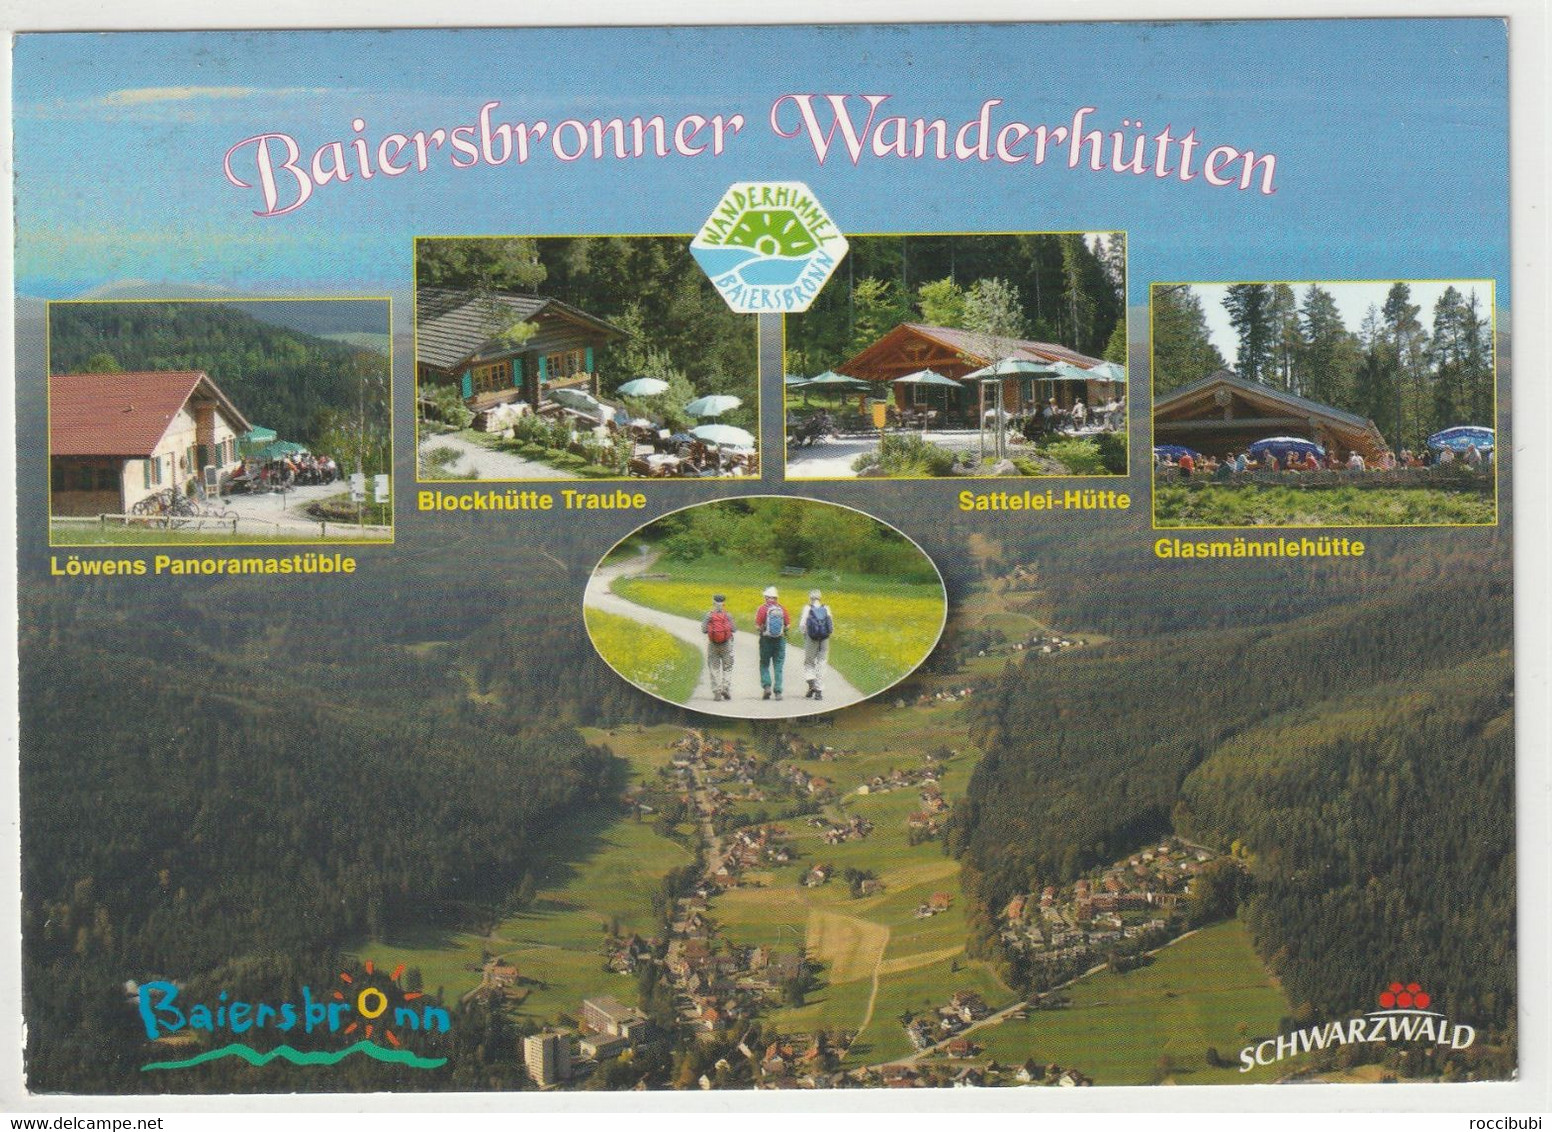 Baiersbronner Wanderhütten, Baden-Württemberg - Baiersbronn